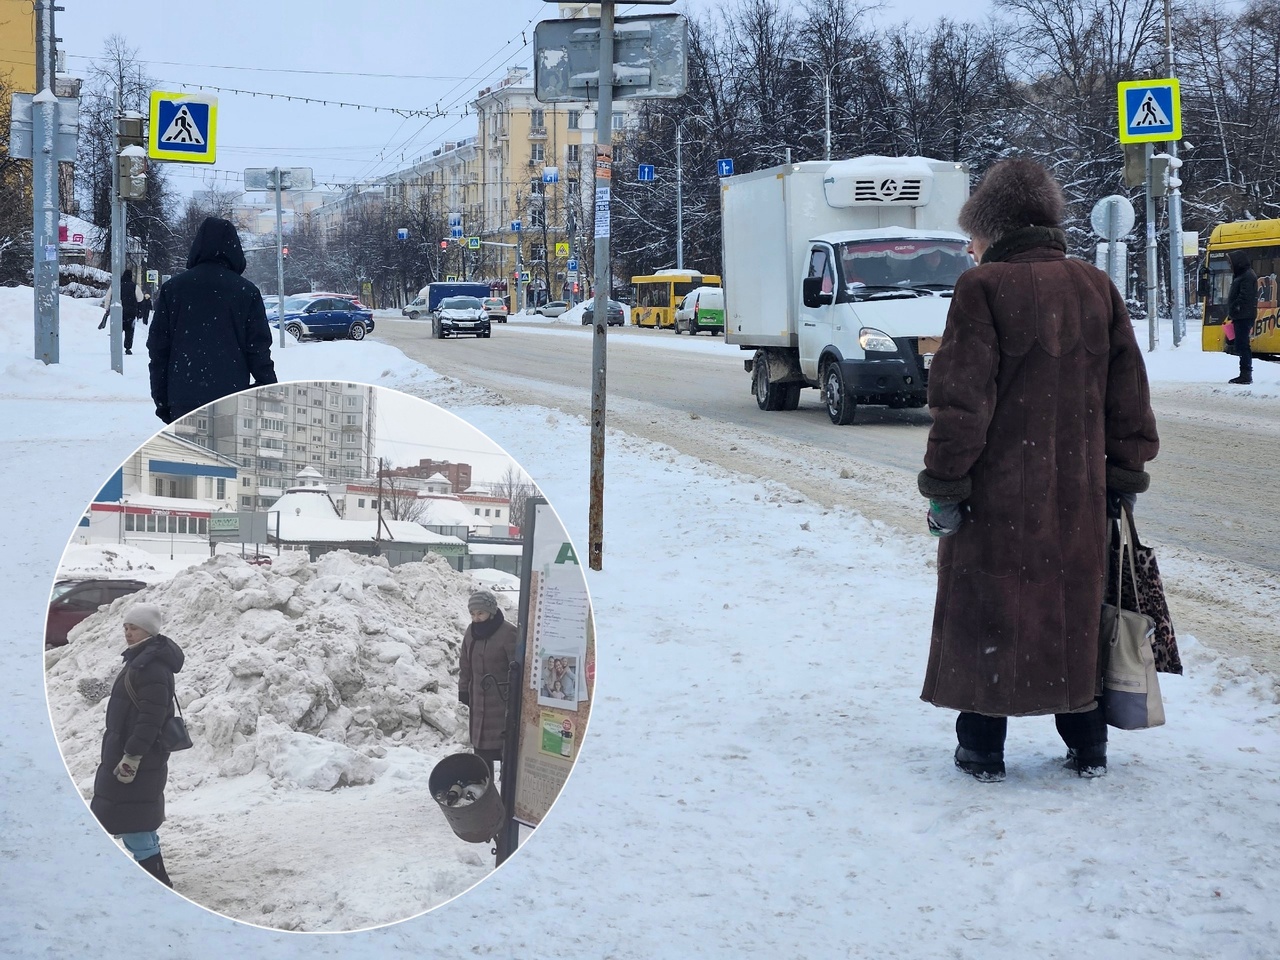 "Улицы превращаются в ад": коммунальщики сбросили на остановке снежную гору